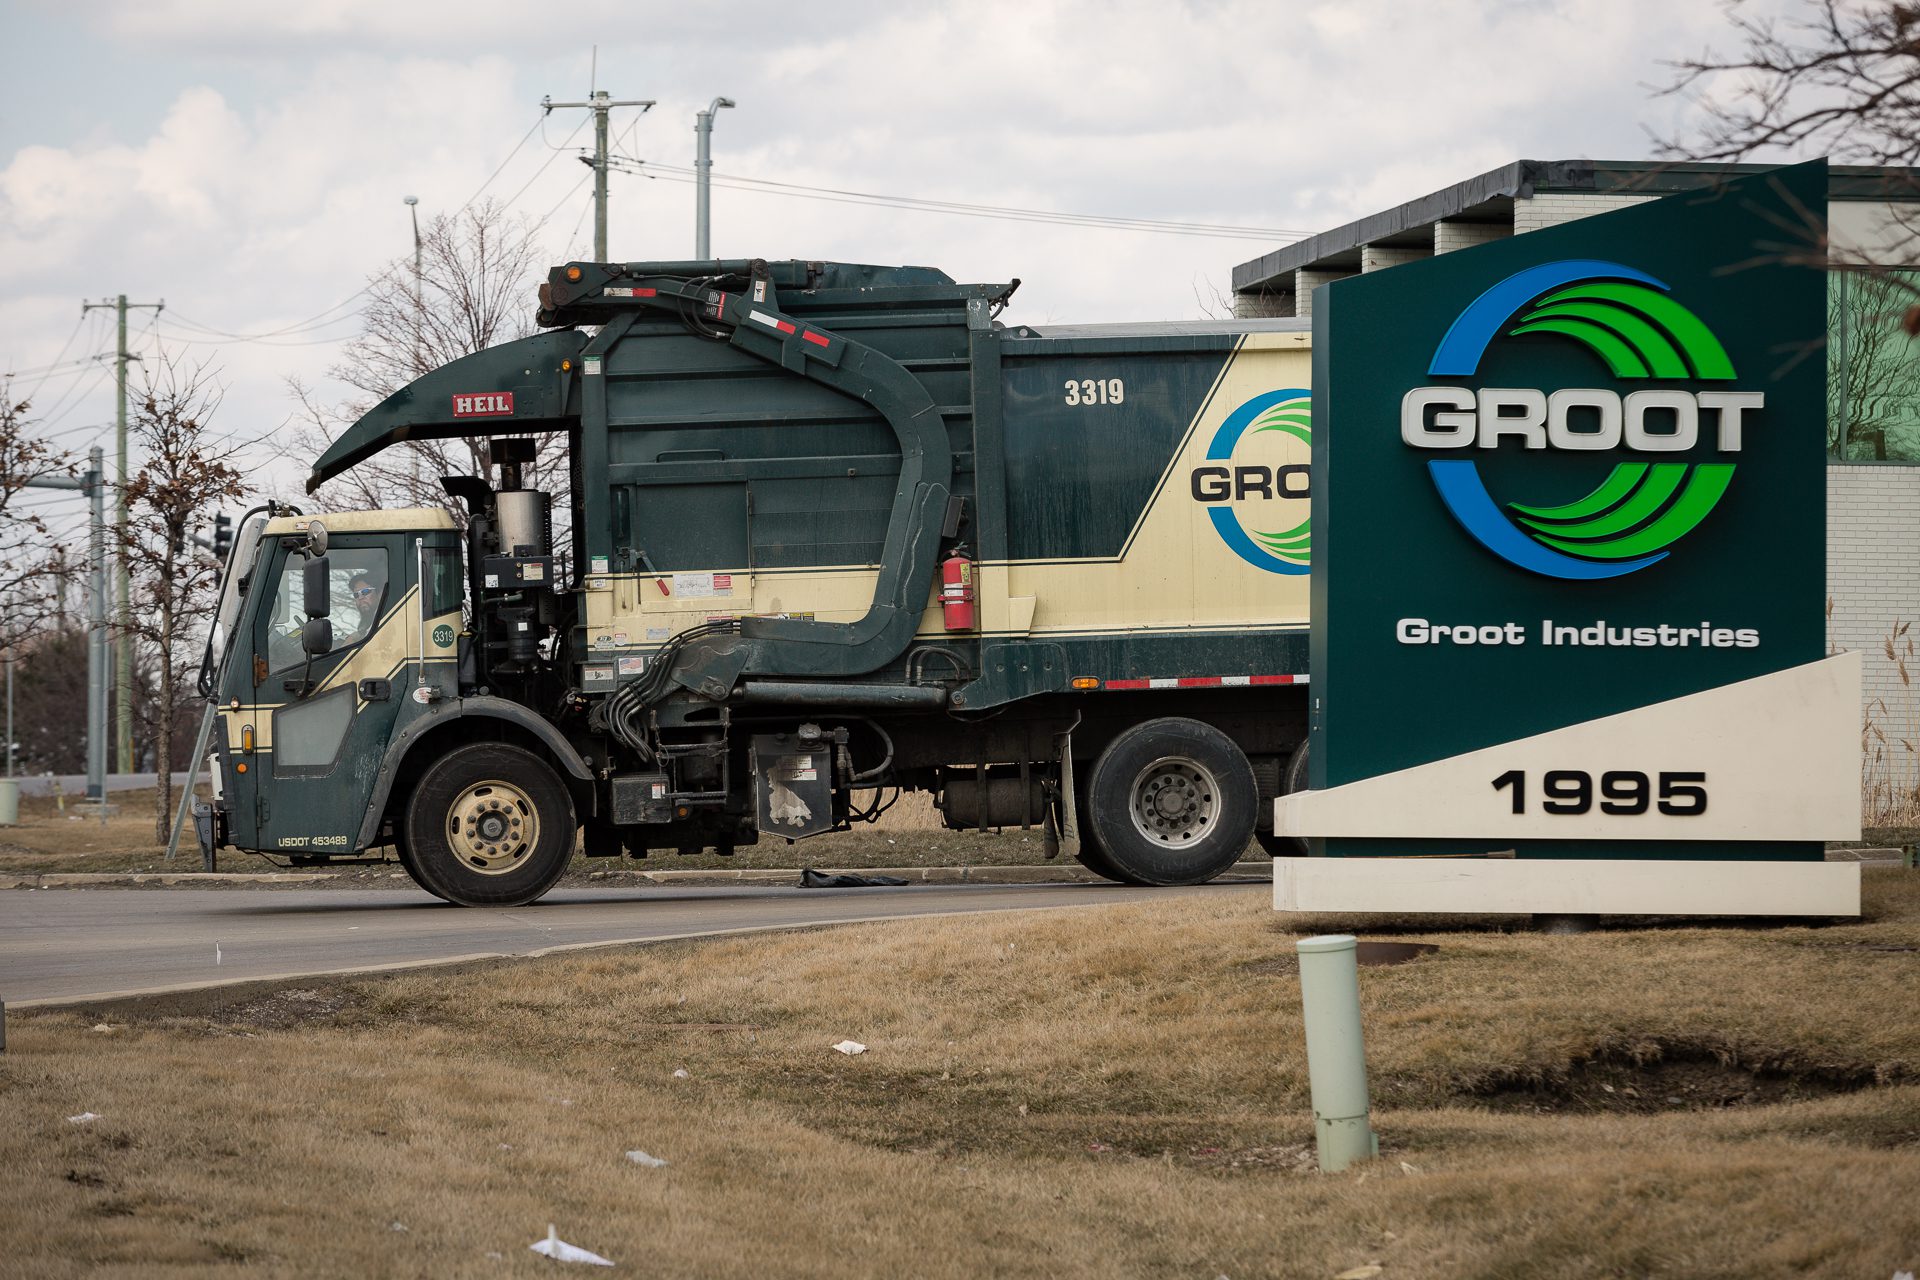 Un camión de basura Groot sale de la instalación de transferencia de residuos